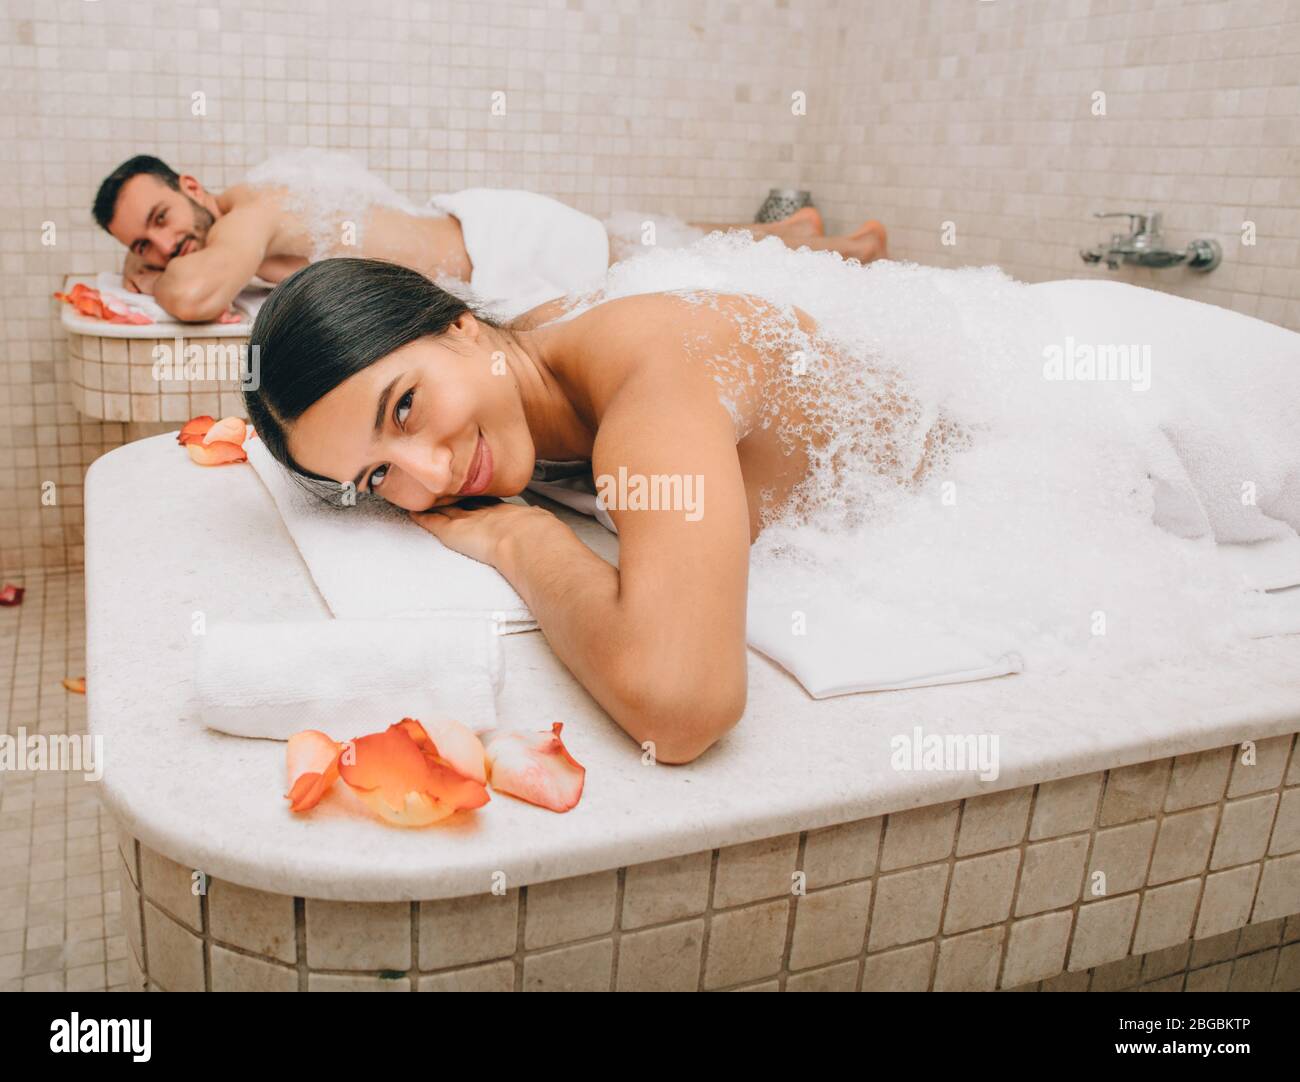 Belle femme et son petit ami se trouvent sur des tables de massage au hammam chaud avant les procédures de lavage du corps. Bain turc pour couple Banque D'Images